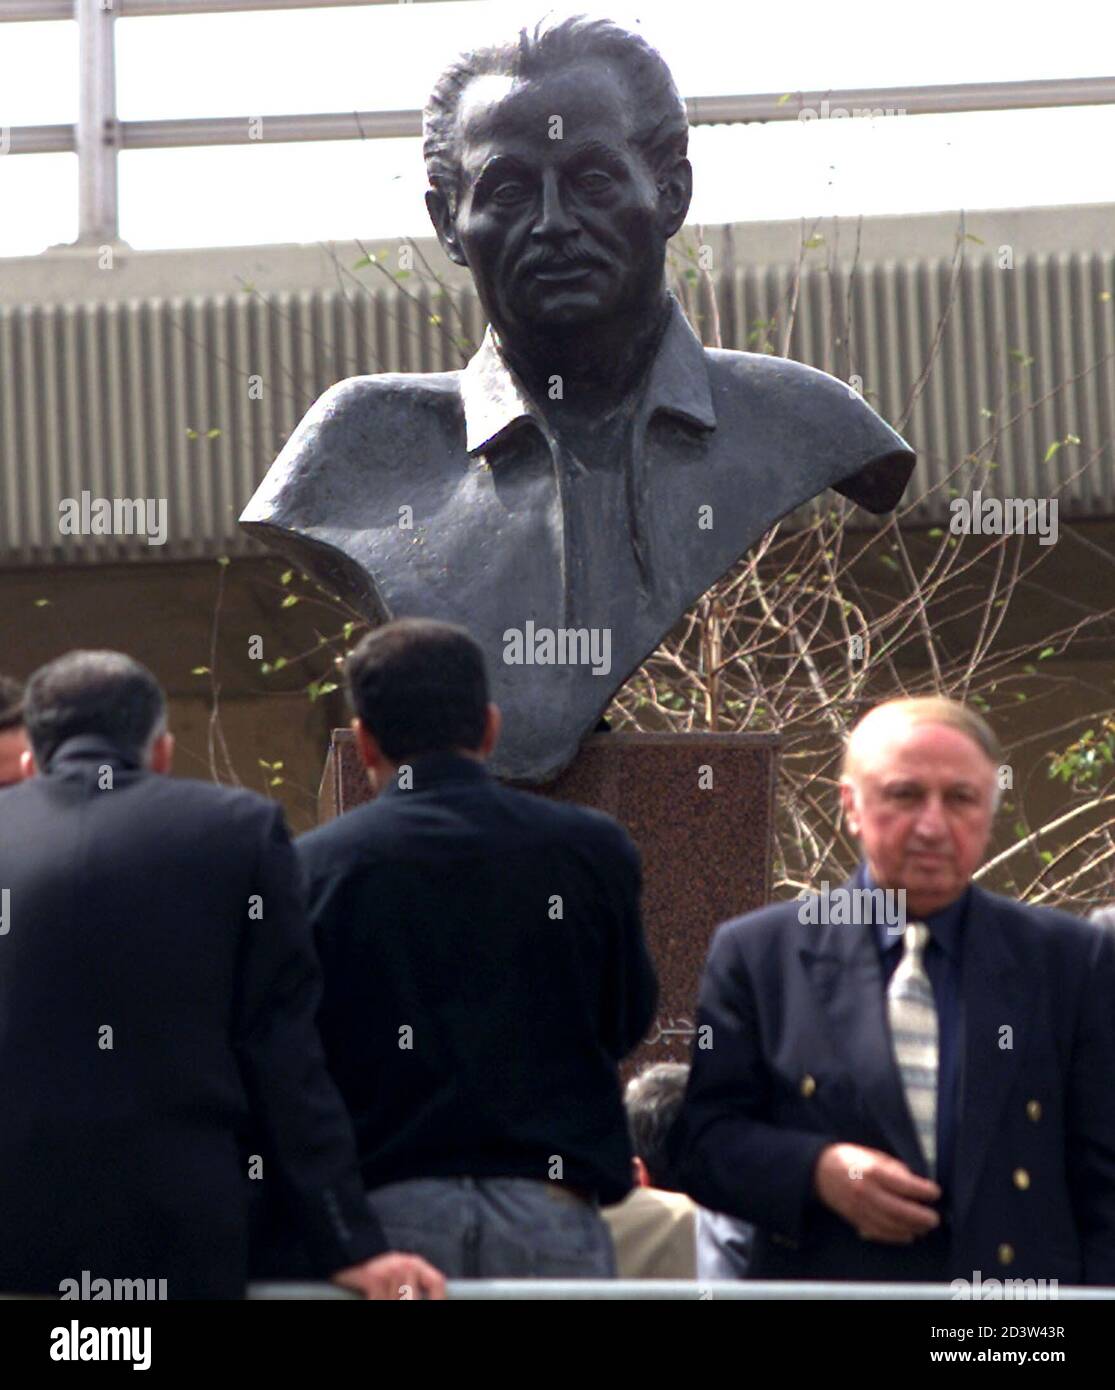 Les résidents libanais regardent la statue de l'écrivain et philosophe bien connu Gibran Khalil Gibran, lors de la cérémonie d'ouverture dans un jardin nommé d'après lui dans le centre-ville de Beyrouth Mars 30,2001. La statue a été faite par la sculpture libanaise Zaven Hadichian. JS/CLH/ Banque D'Images